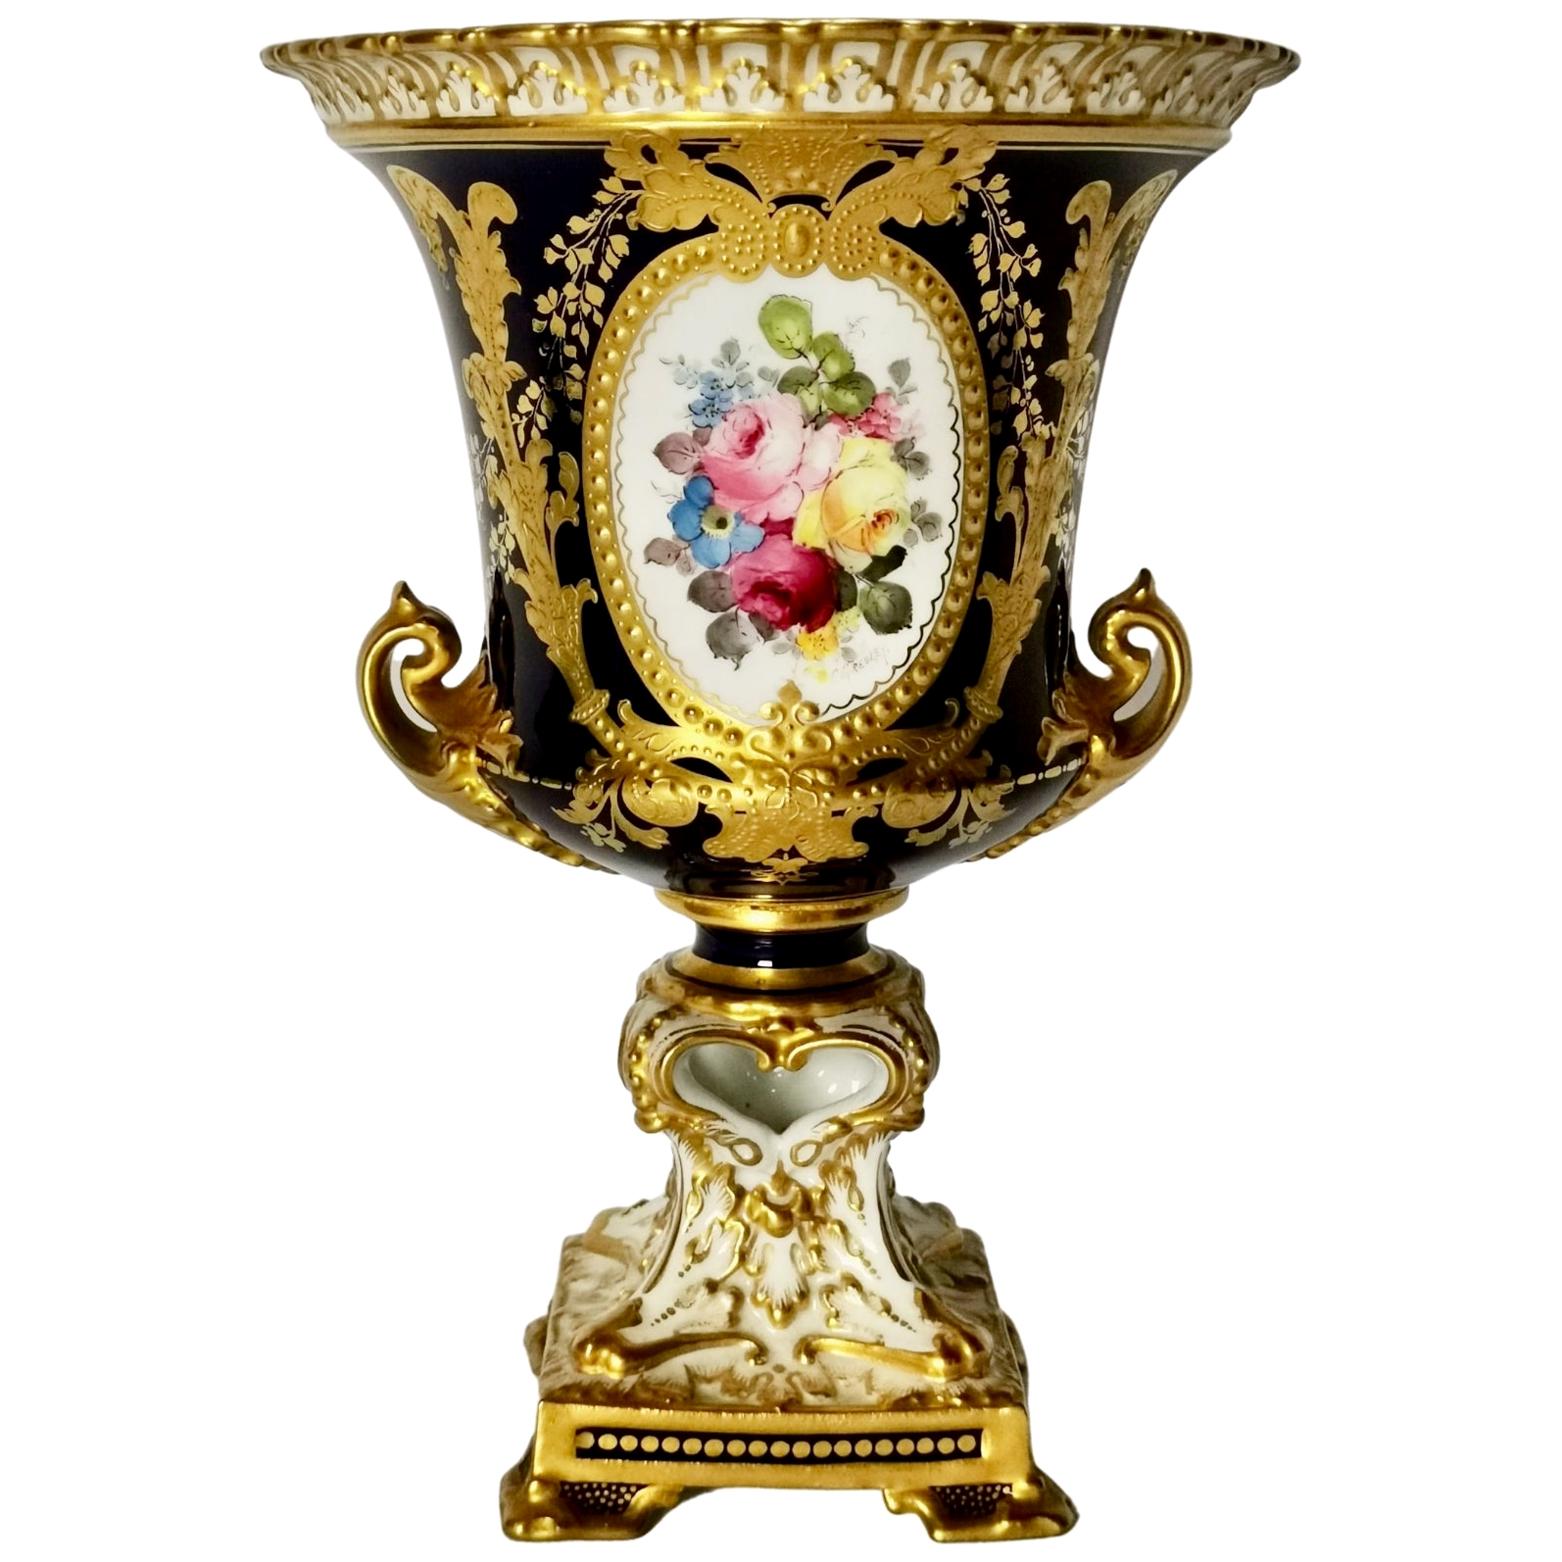 Royal Crown Derby Porcelain Campana Vase, Cobalt Blue, Flowers by C Gresley 1916 For Sale